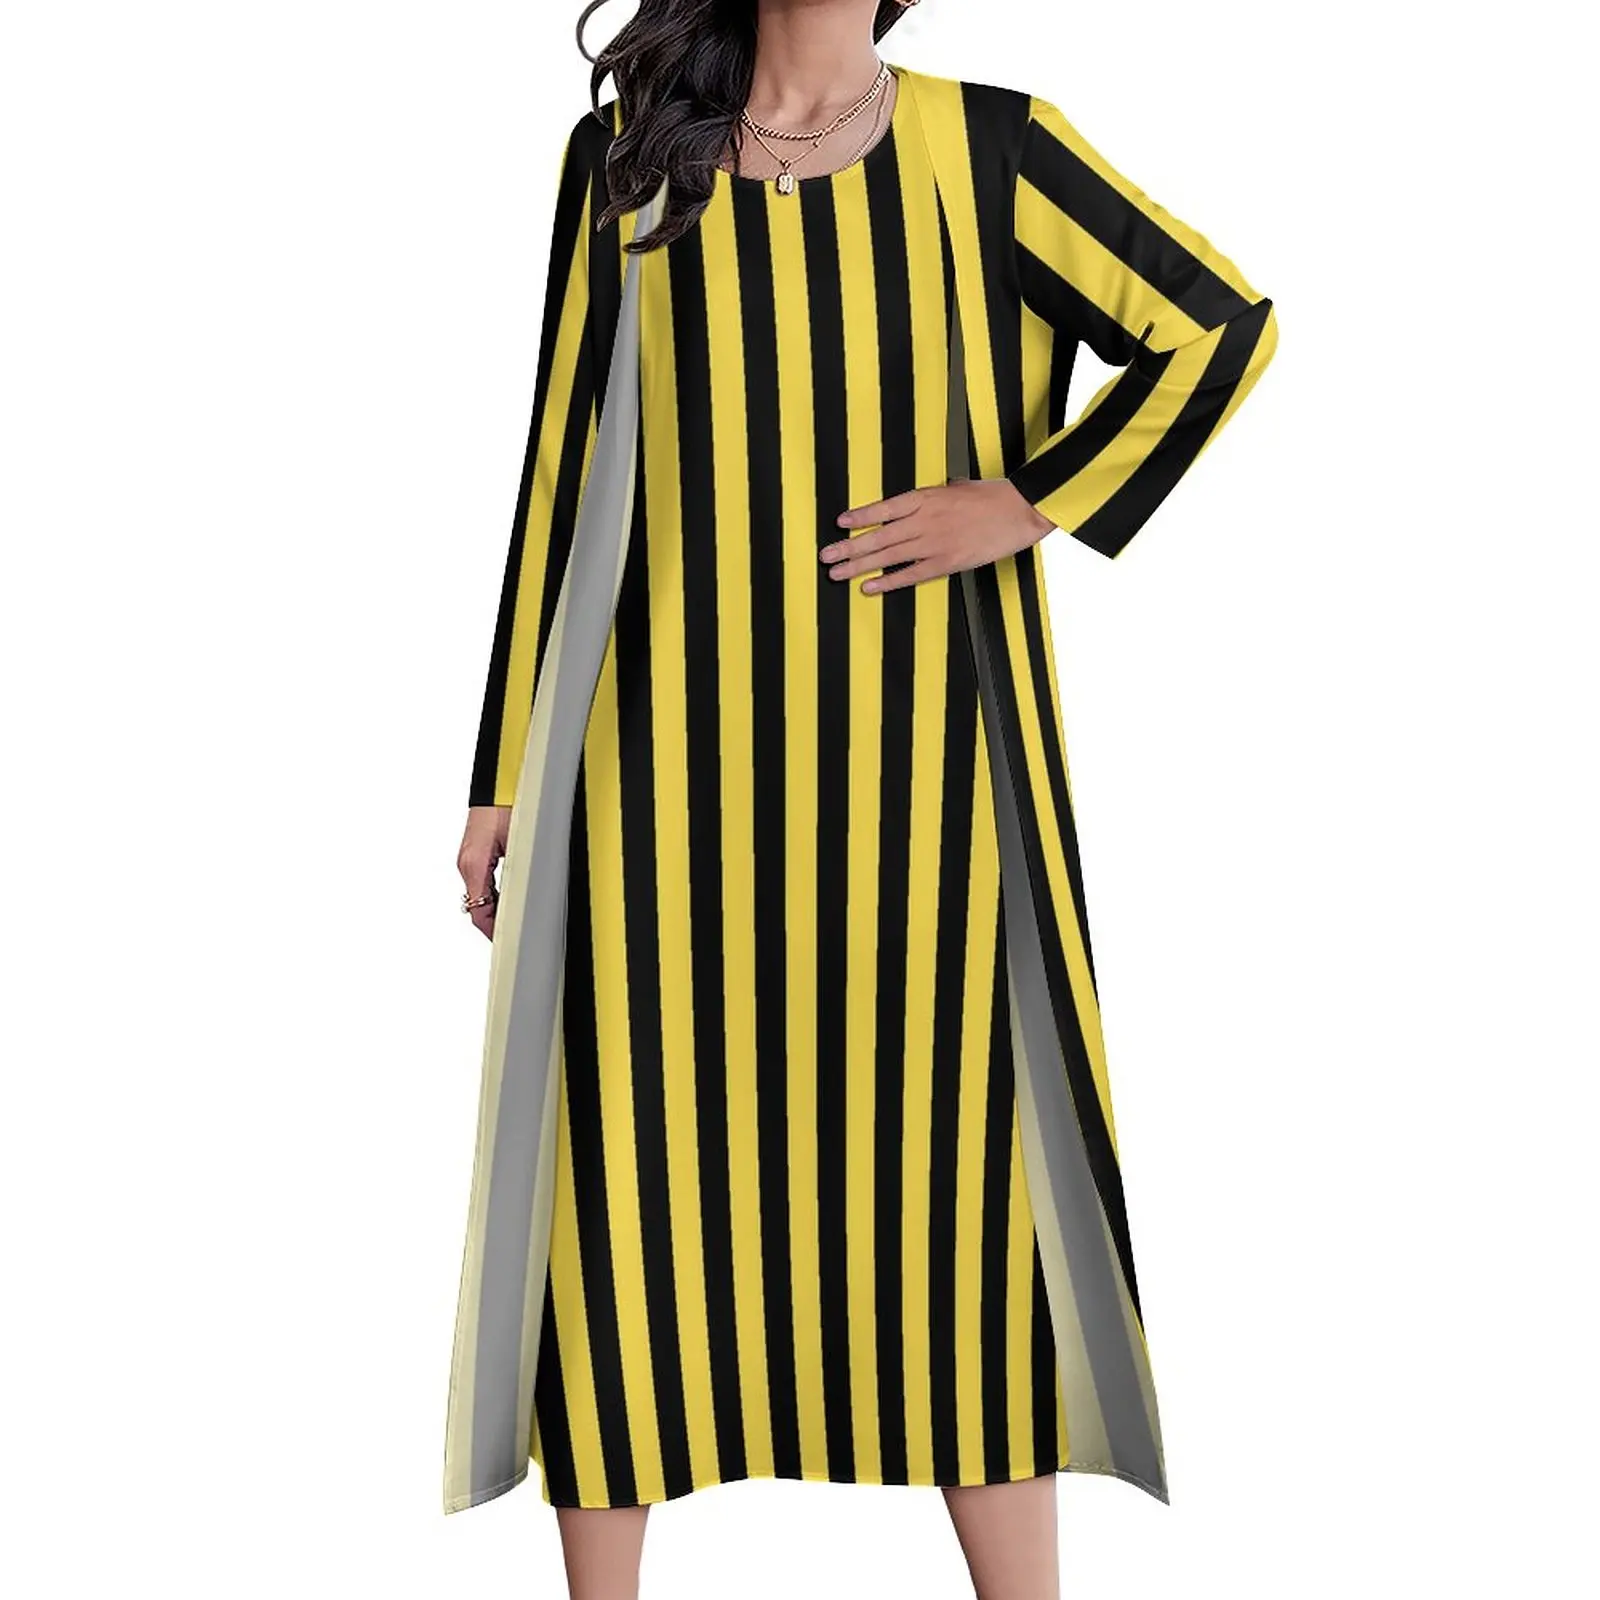 

Платье-макси в Вертикальную Полоску, винтажное длинное черно-желтое платье с графическим принтом, повседневная одежда большого размера из двух предметов